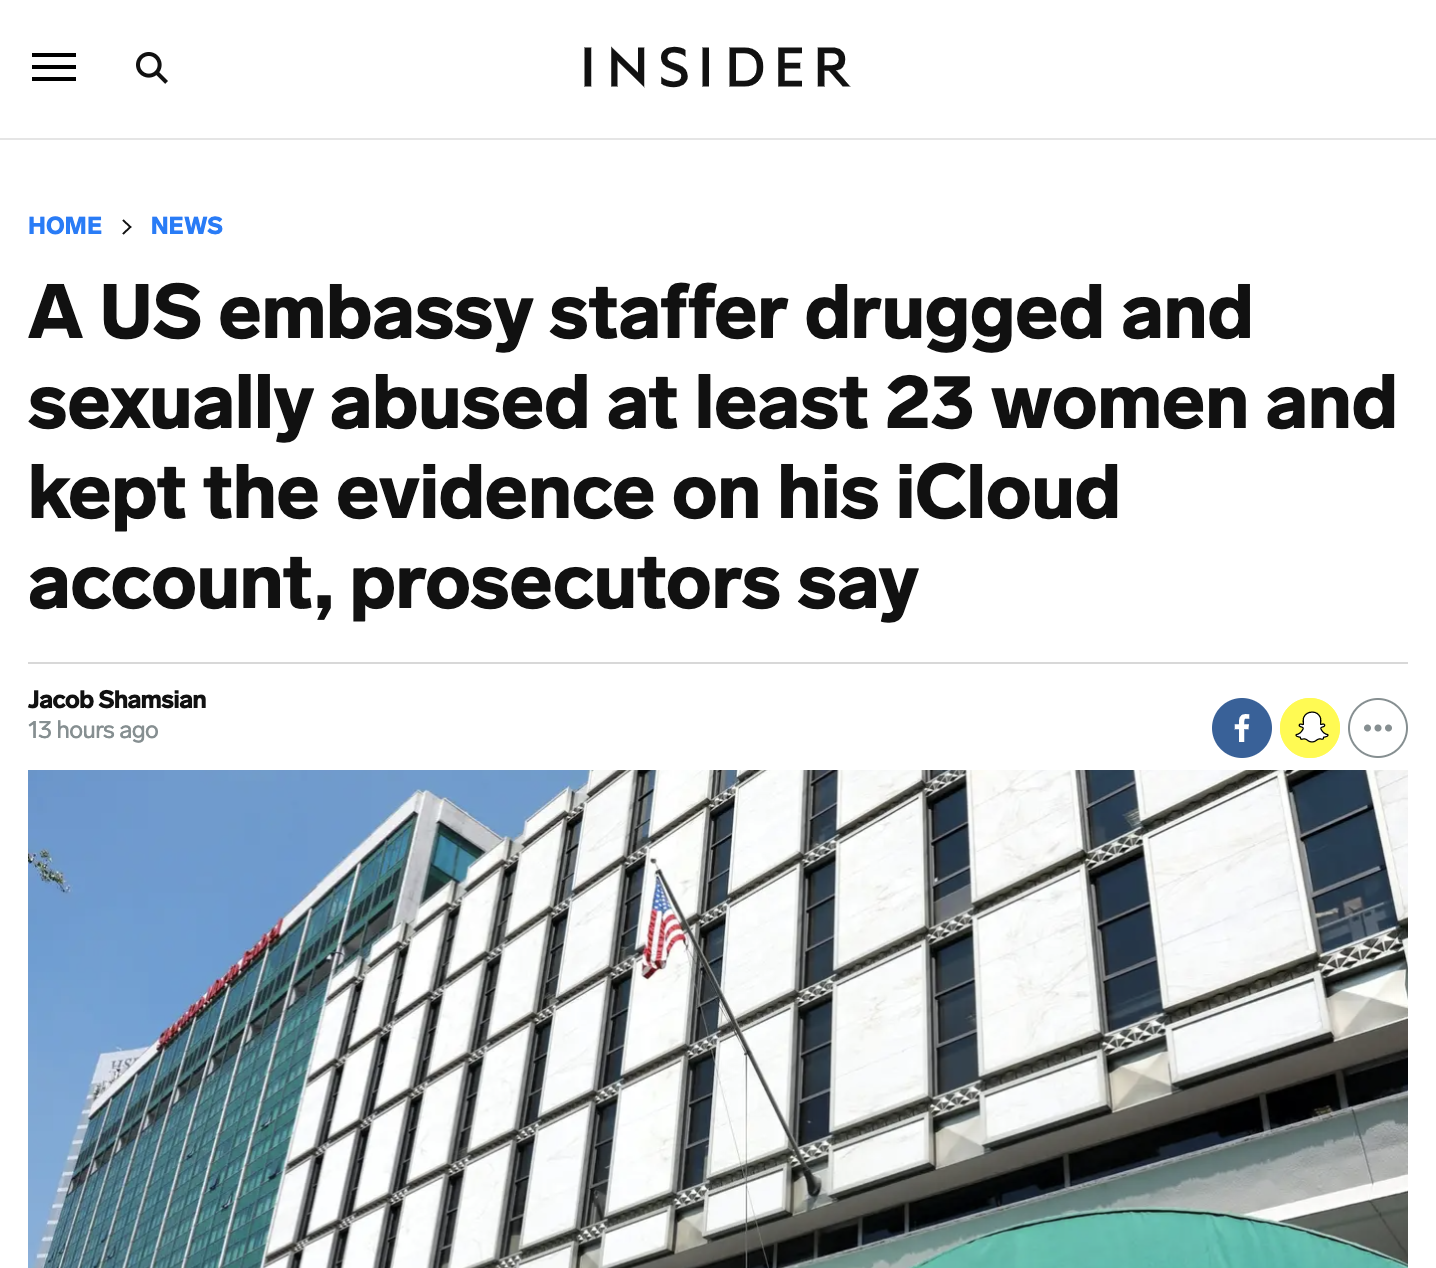 曾在6國工作 美駐墨使館人員涉下藥性侵23女雲端搜出400多照片